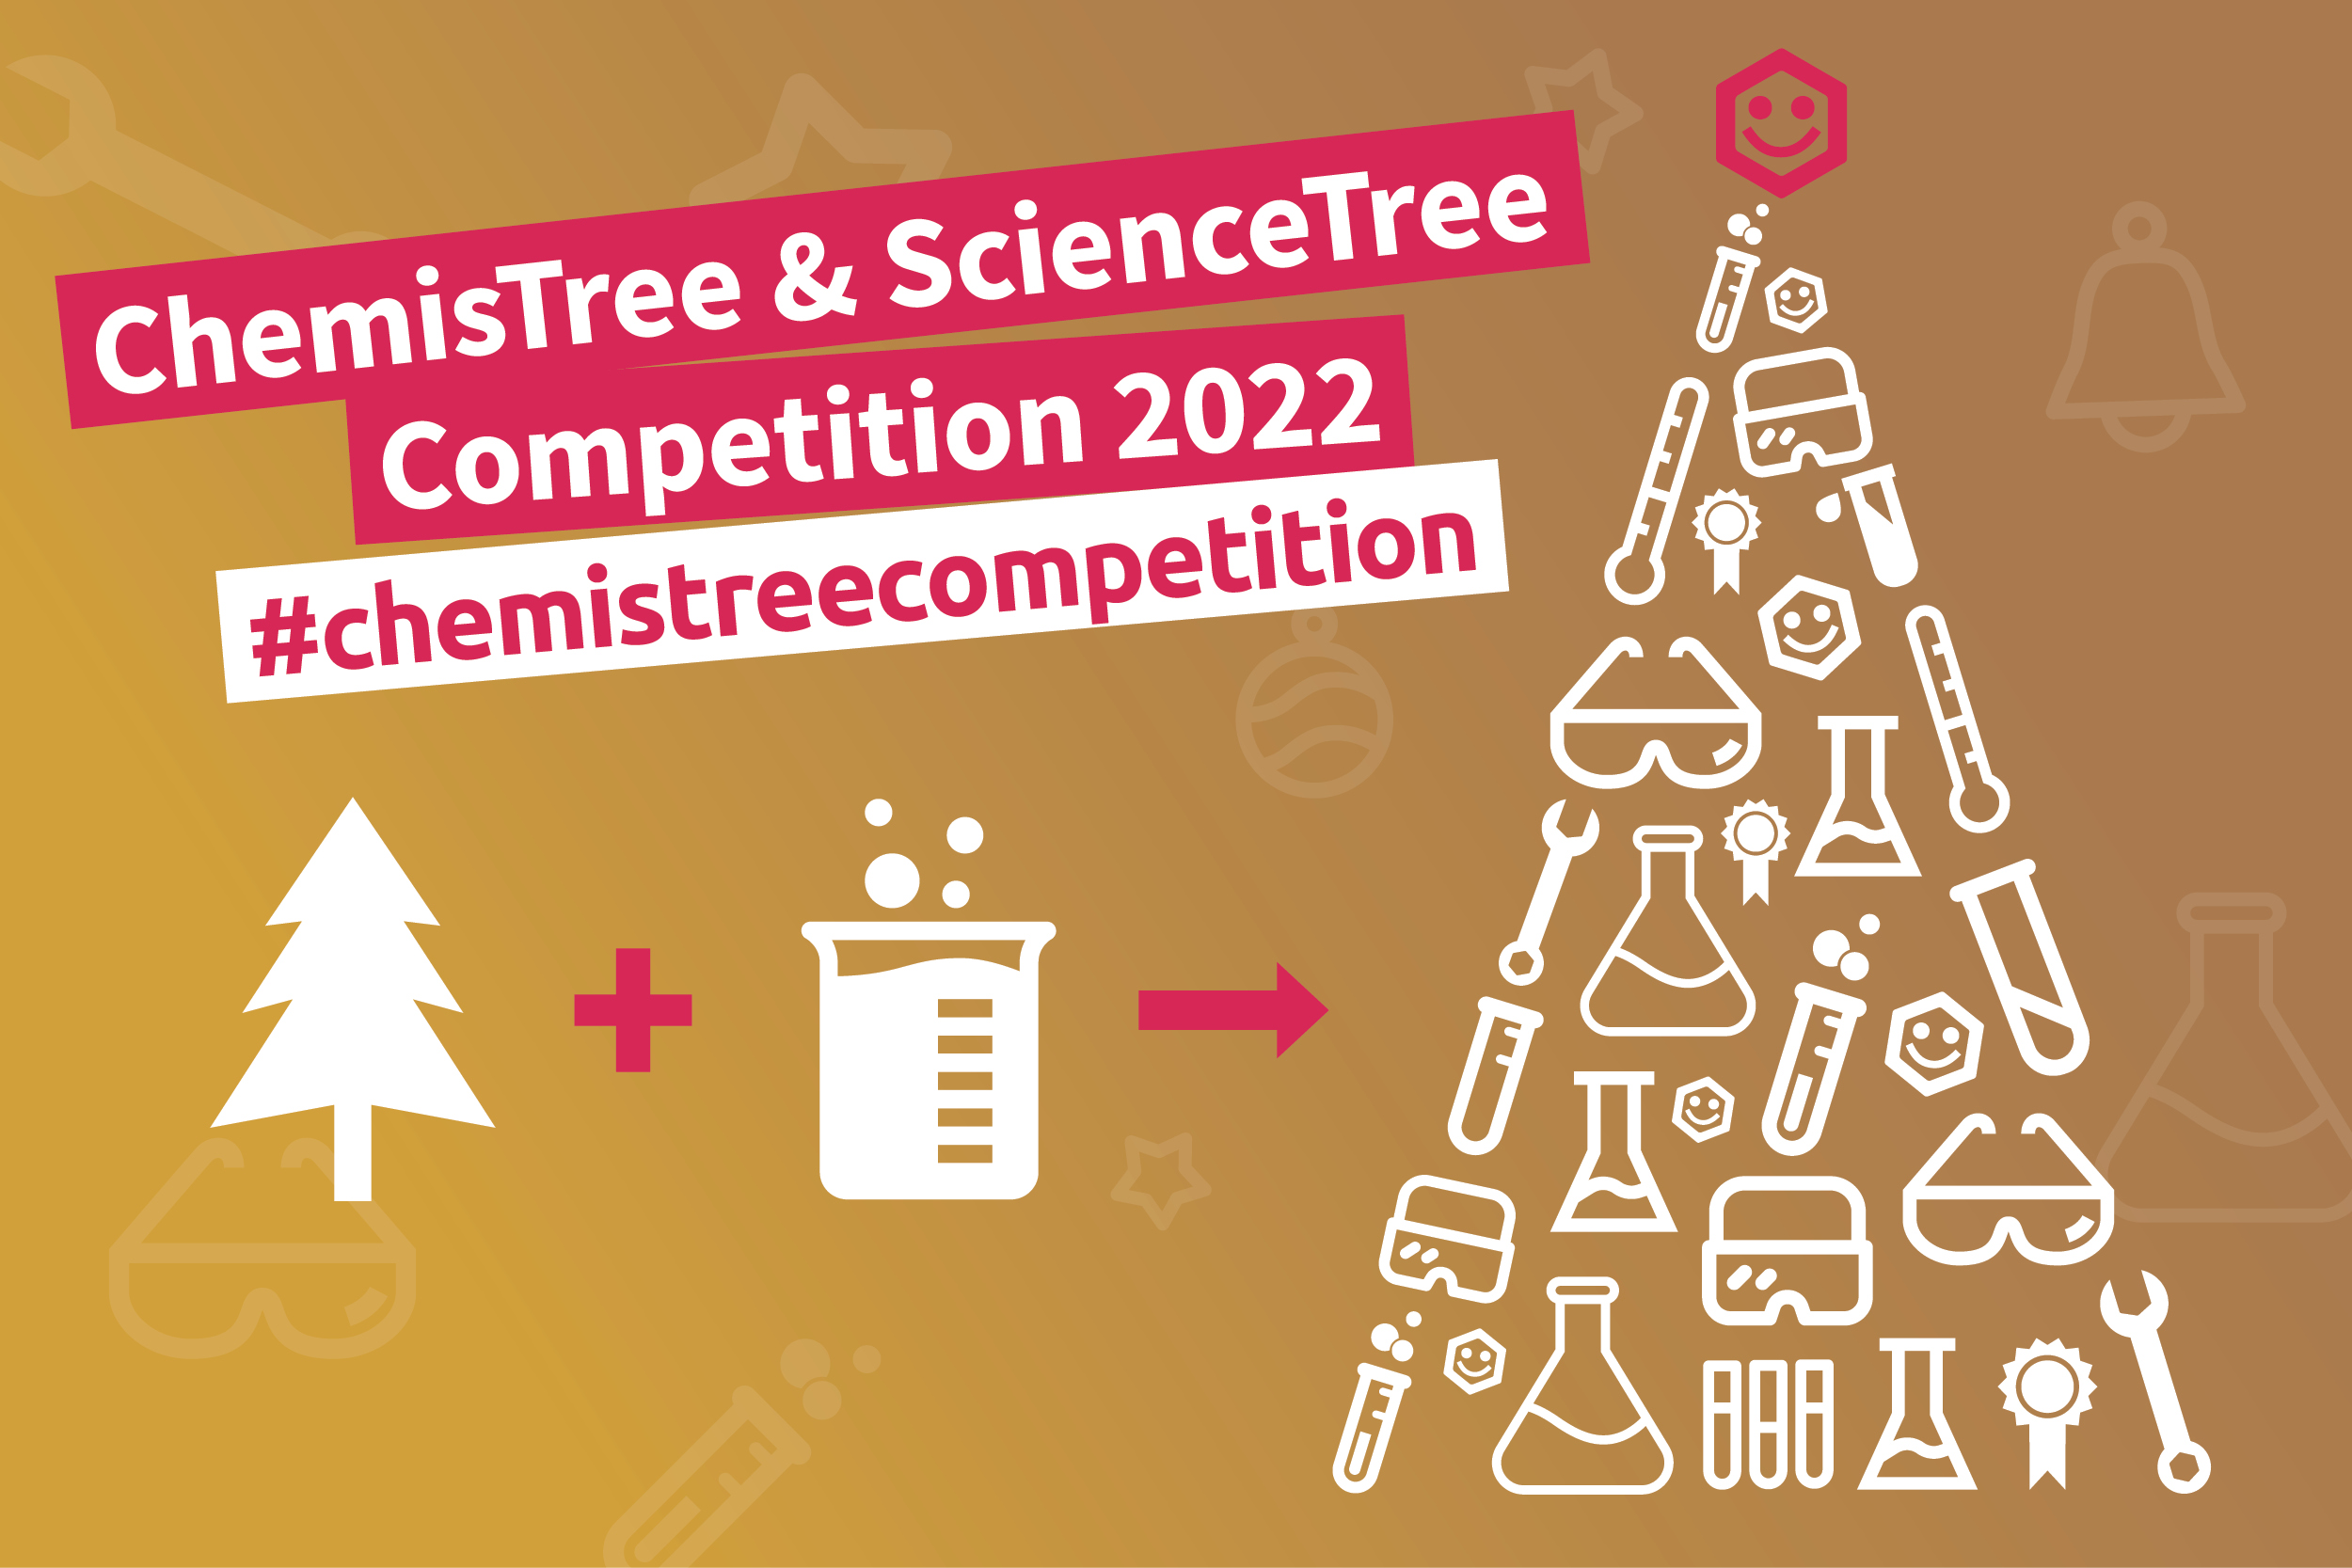 Macht mit bei unseren dritten #chemistreecompetition und gewinnt Preise im Gesamtwert von 3.000€!